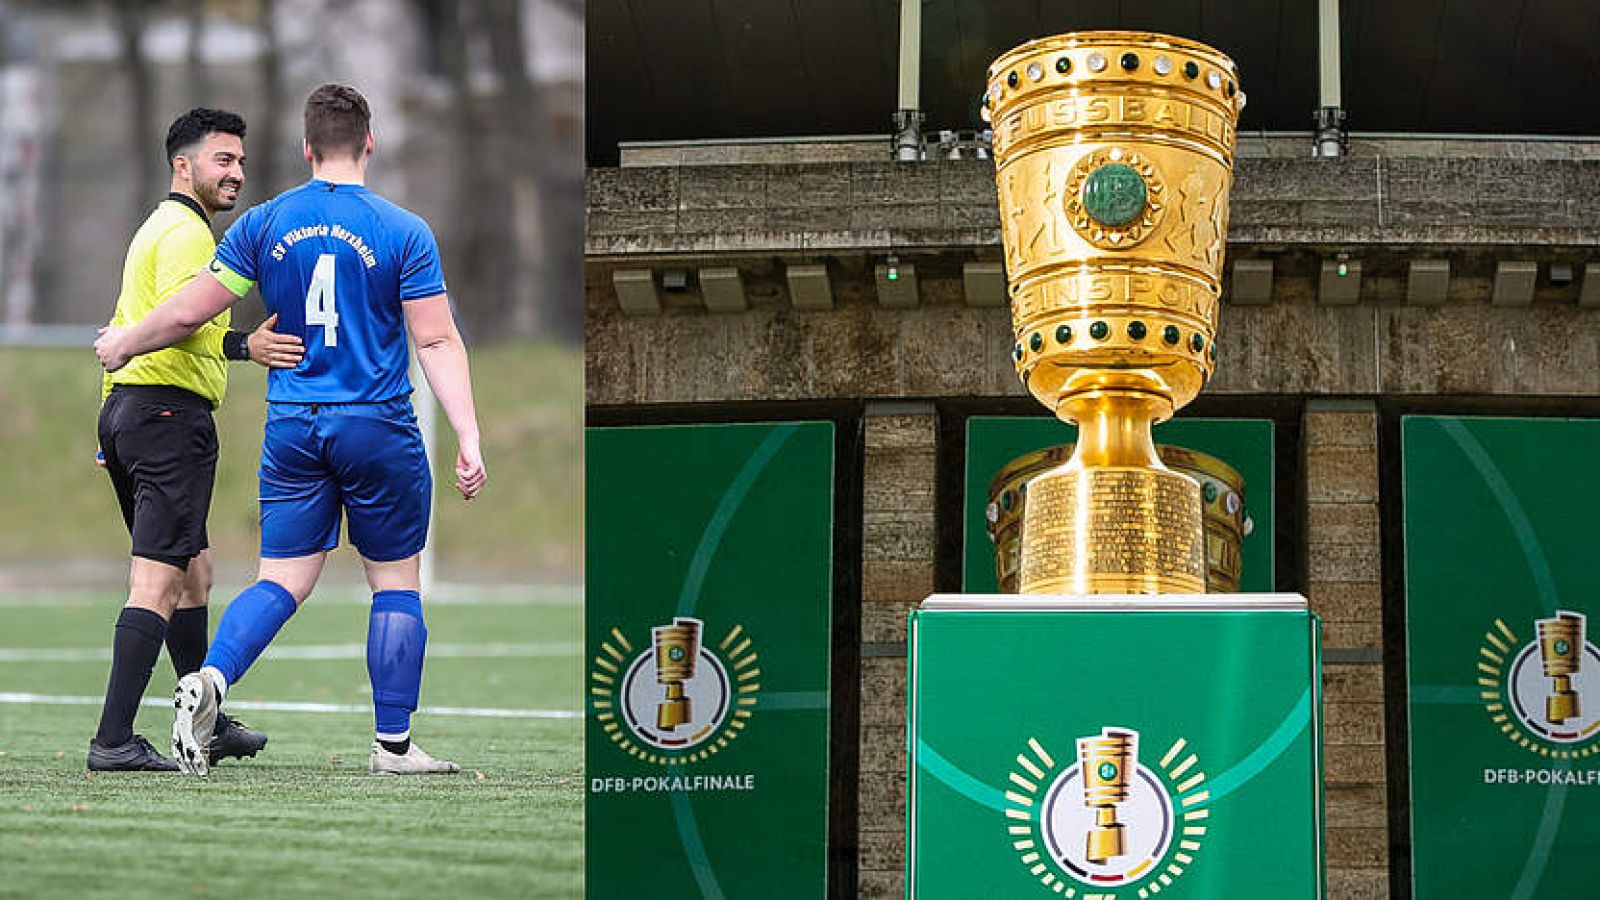 DFB-Pokal Tickets and Treffen mit Final-Schiri